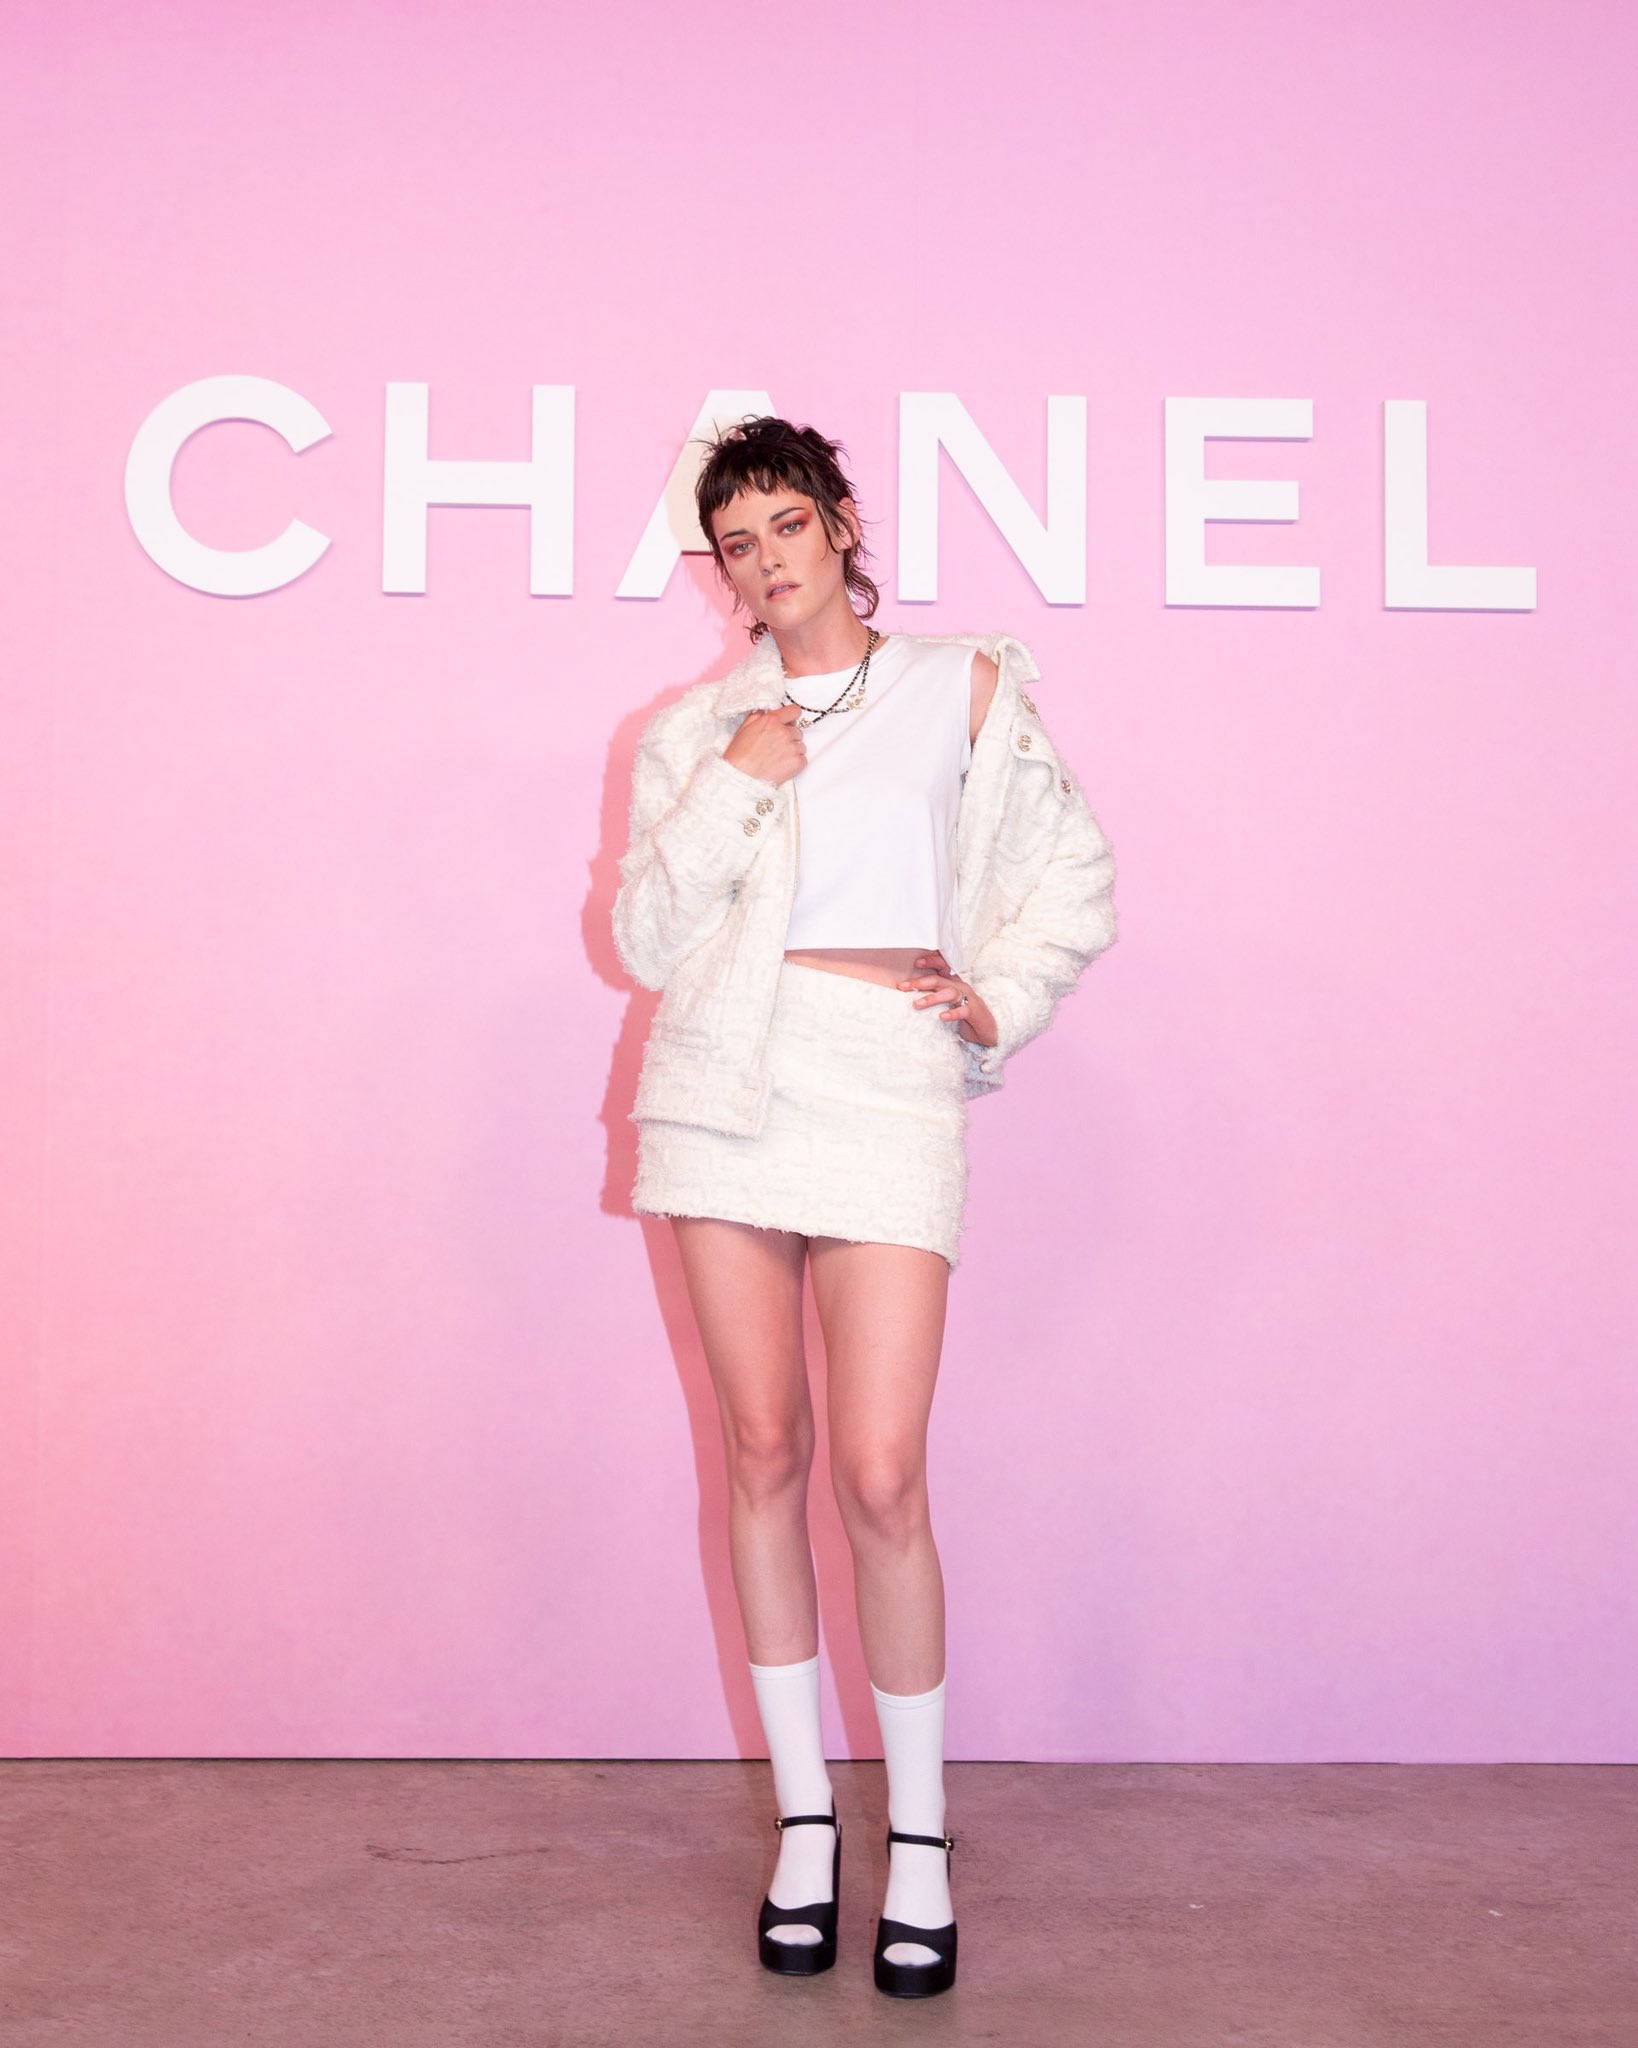 🩸Carrie Cortave 🎃 on X: Kristen Stewart, Chanel Girl